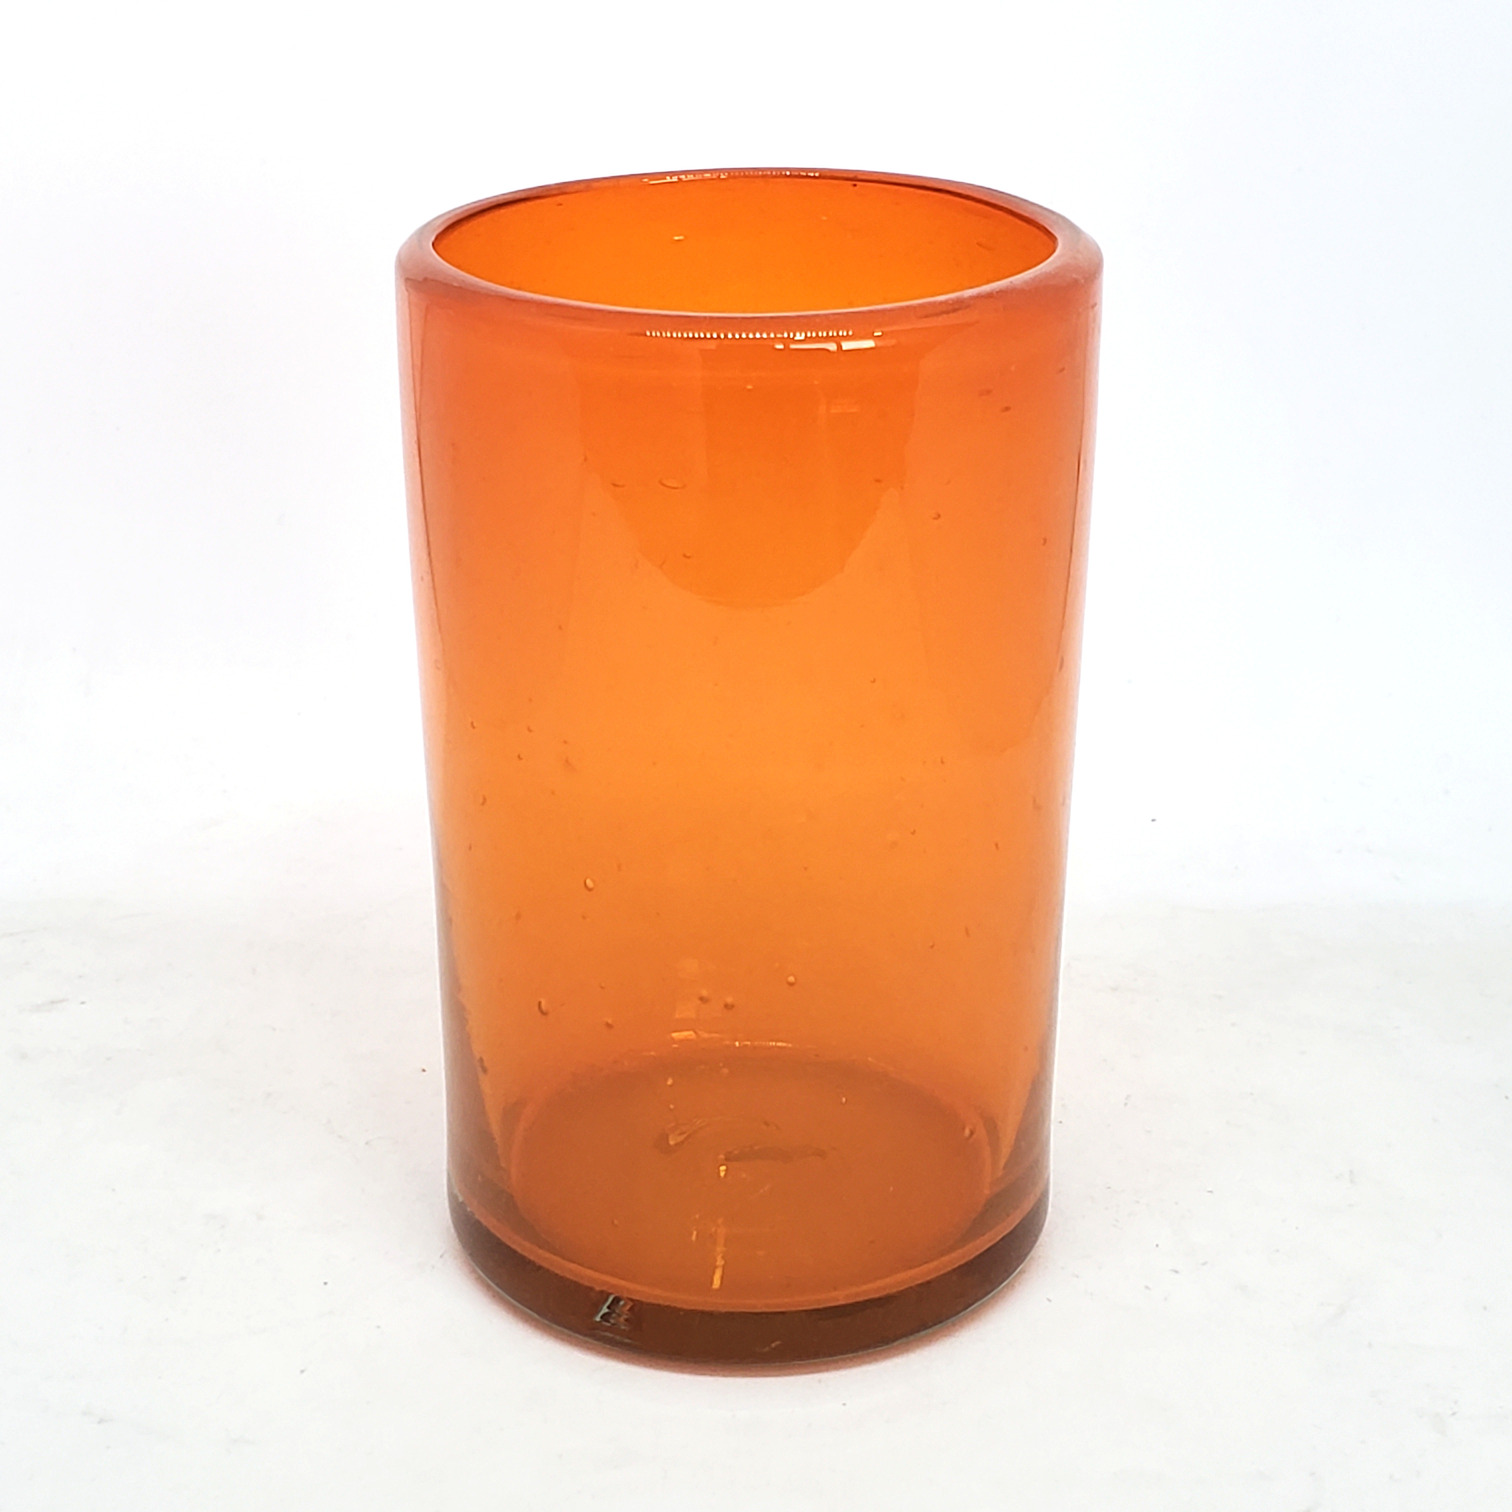 Novedades / Juego de 6 vasos grandes color naranja / Éstos artesanales vasos le darán un toque clásico a su bebida favorita.